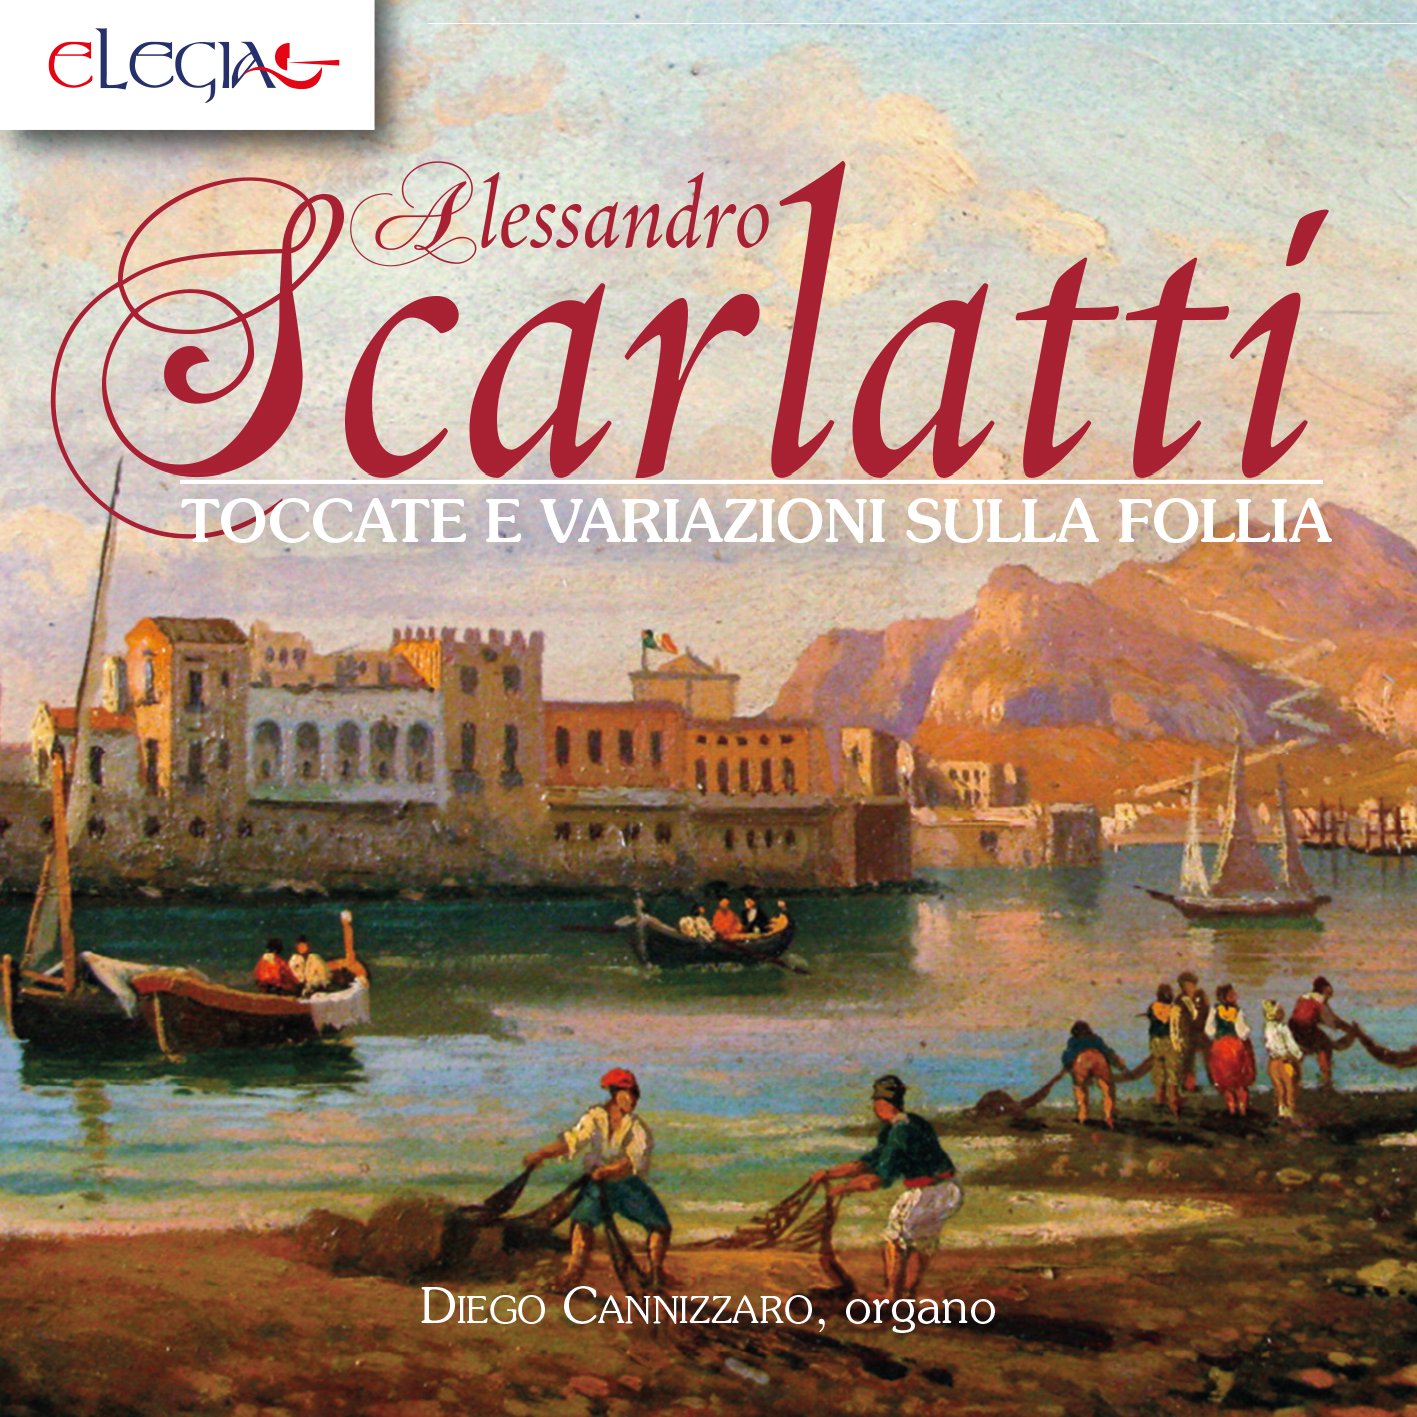 locandina NOT Off con Alessandro Scarlatti e Diego Cannizzaro